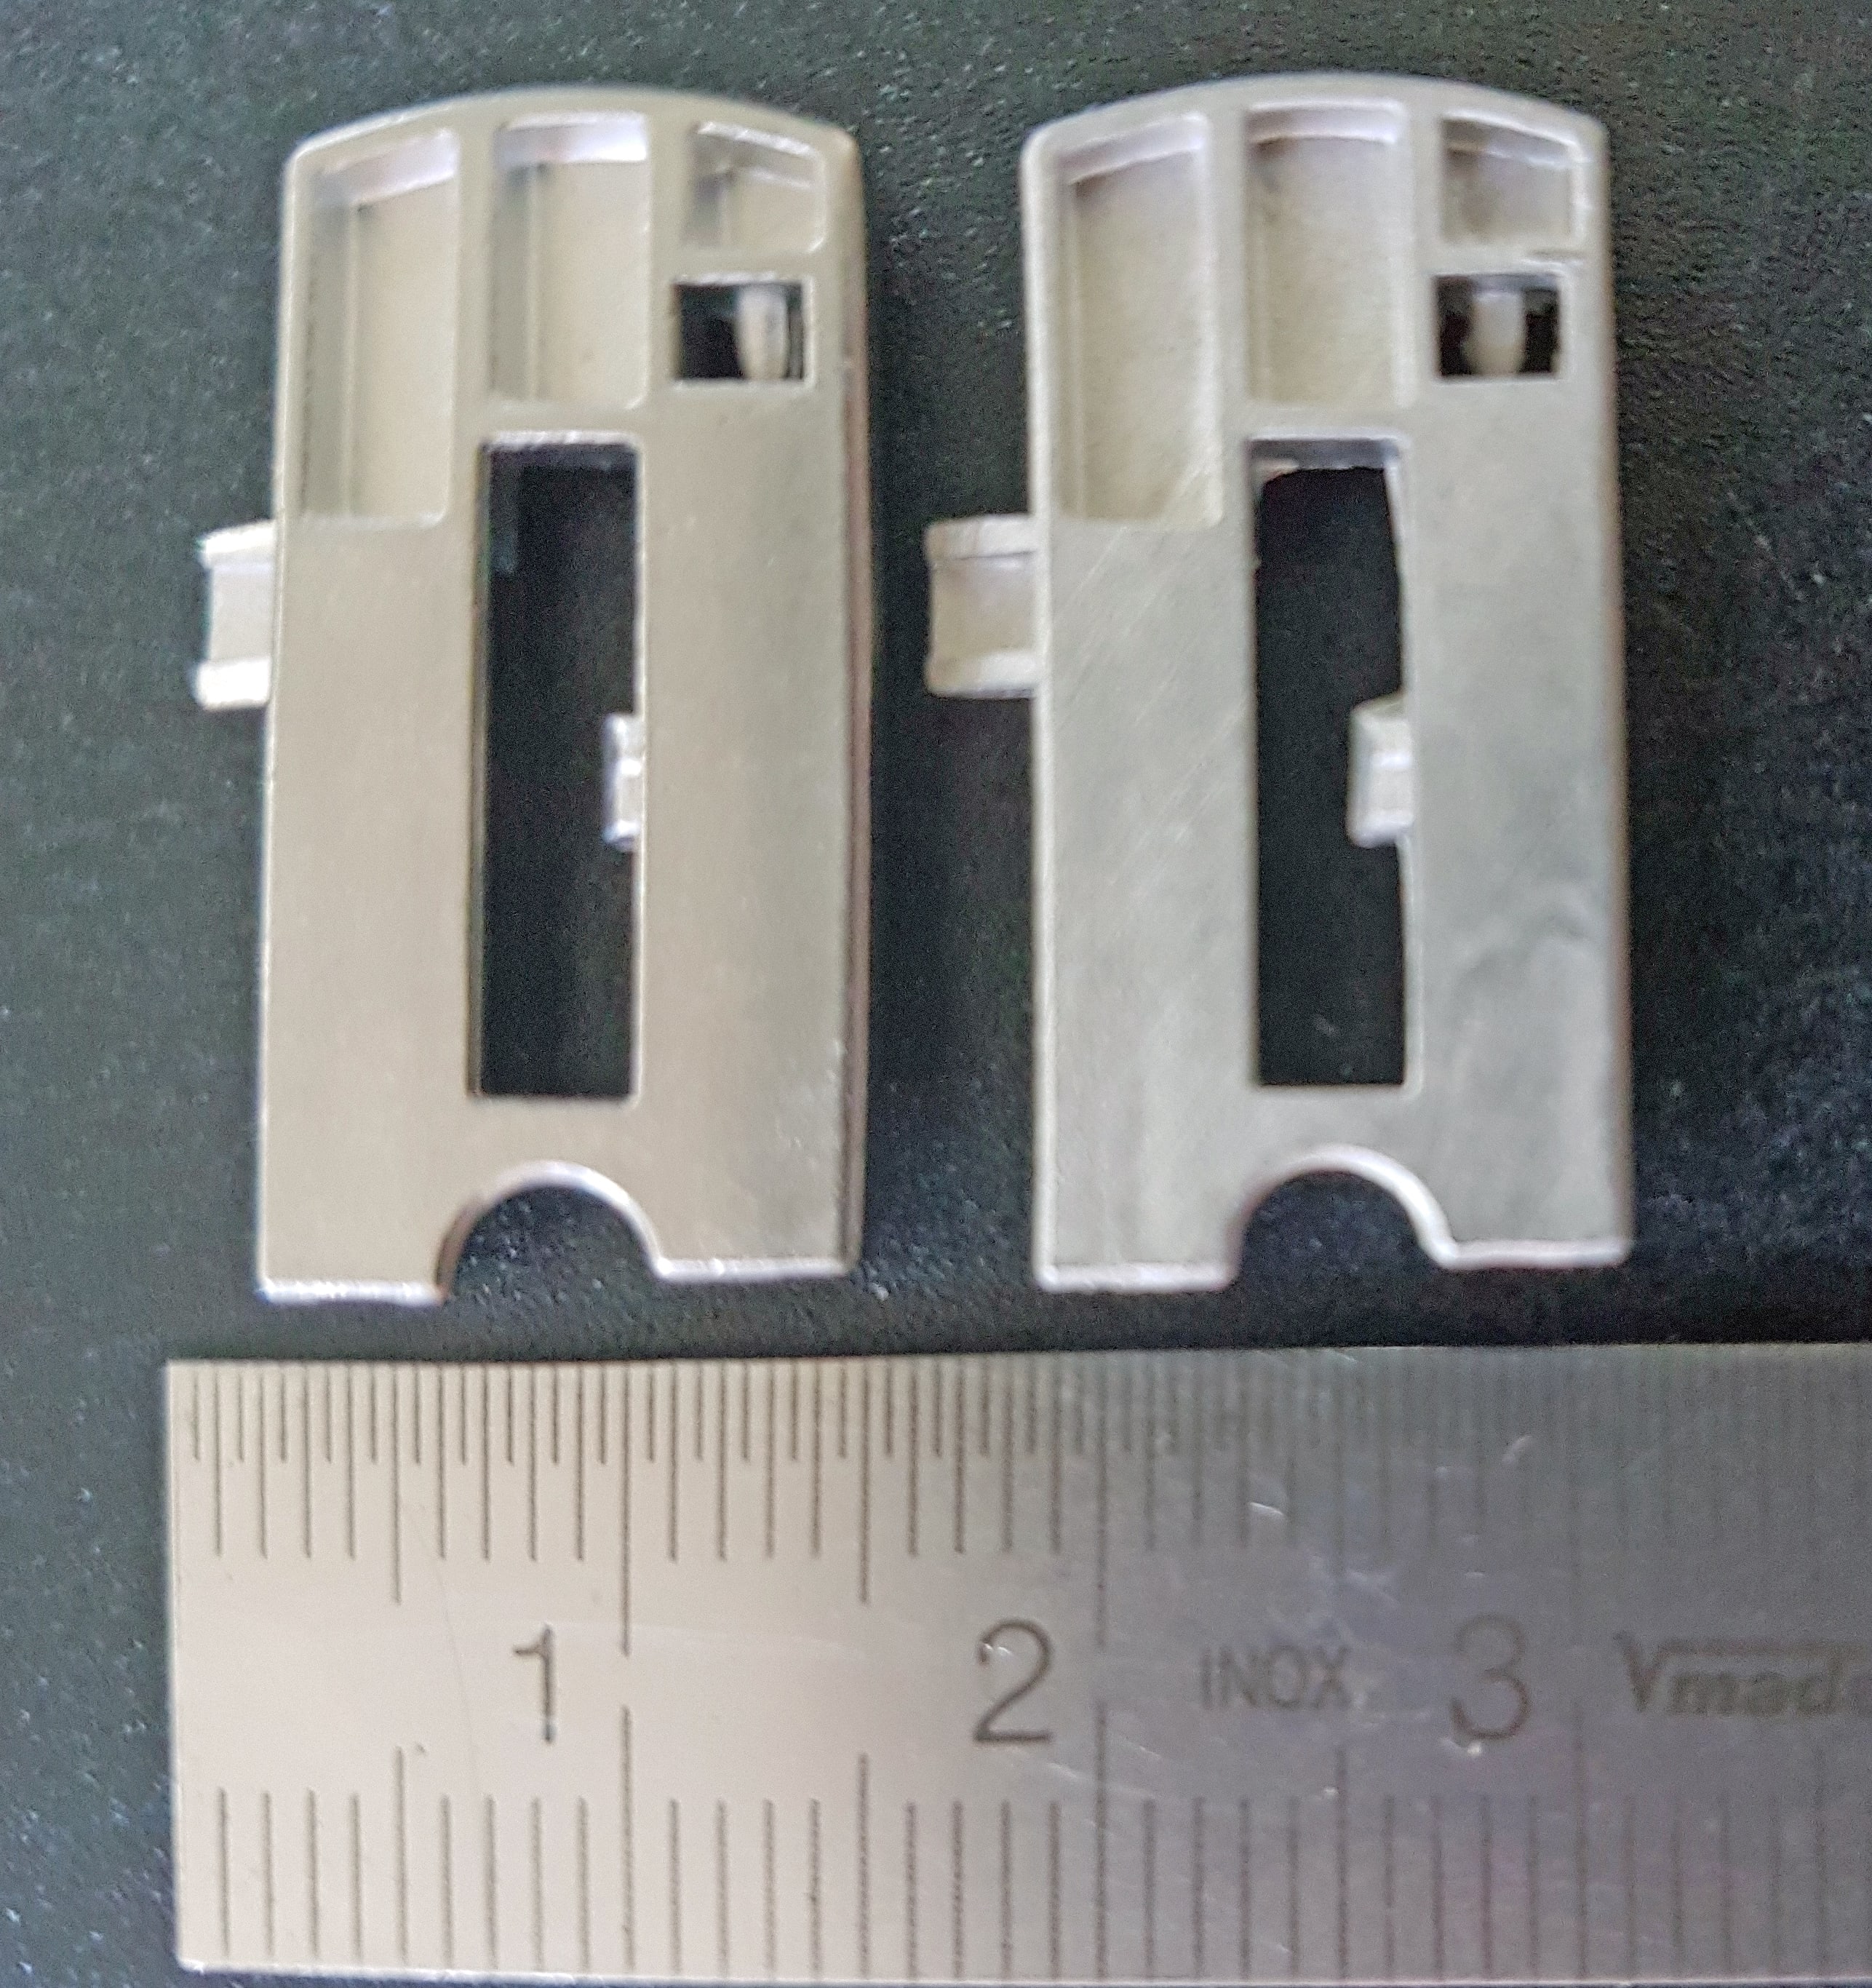 Vergleich MIM-Bauteil aus der Serienproduktion (links) und im Injex Prototypenverfahren (rechts)